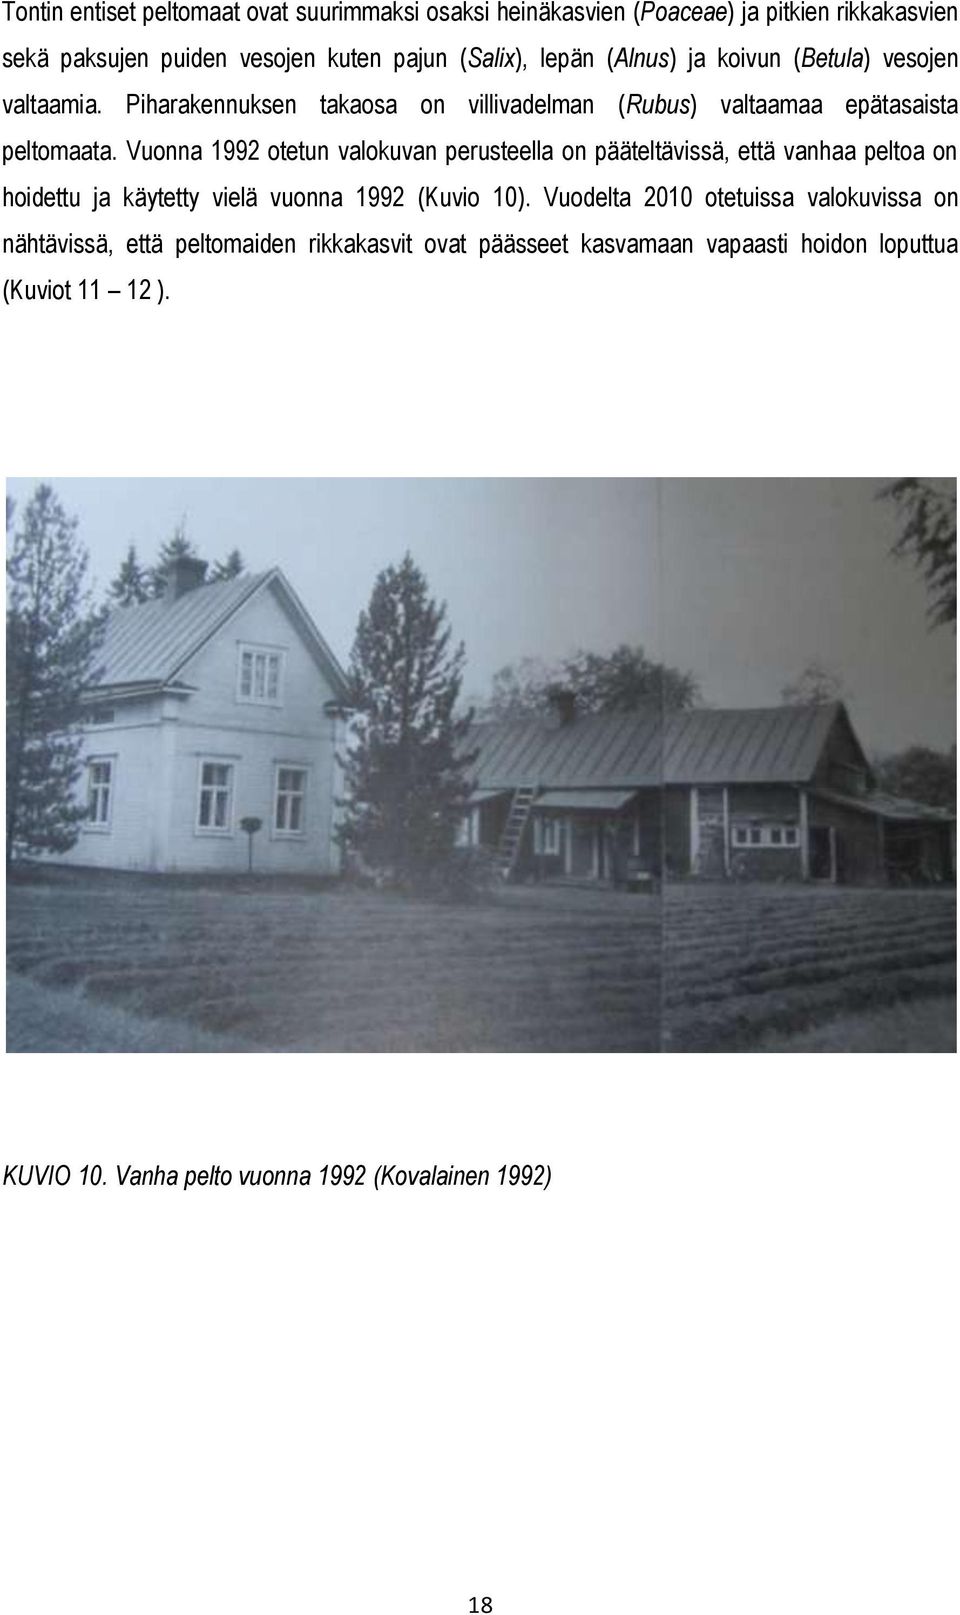 Vuonna 1992 otetun valokuvan perusteella on pääteltävissä, että vanhaa peltoa on hoidettu ja käytetty vielä vuonna 1992 (Kuvio 10).